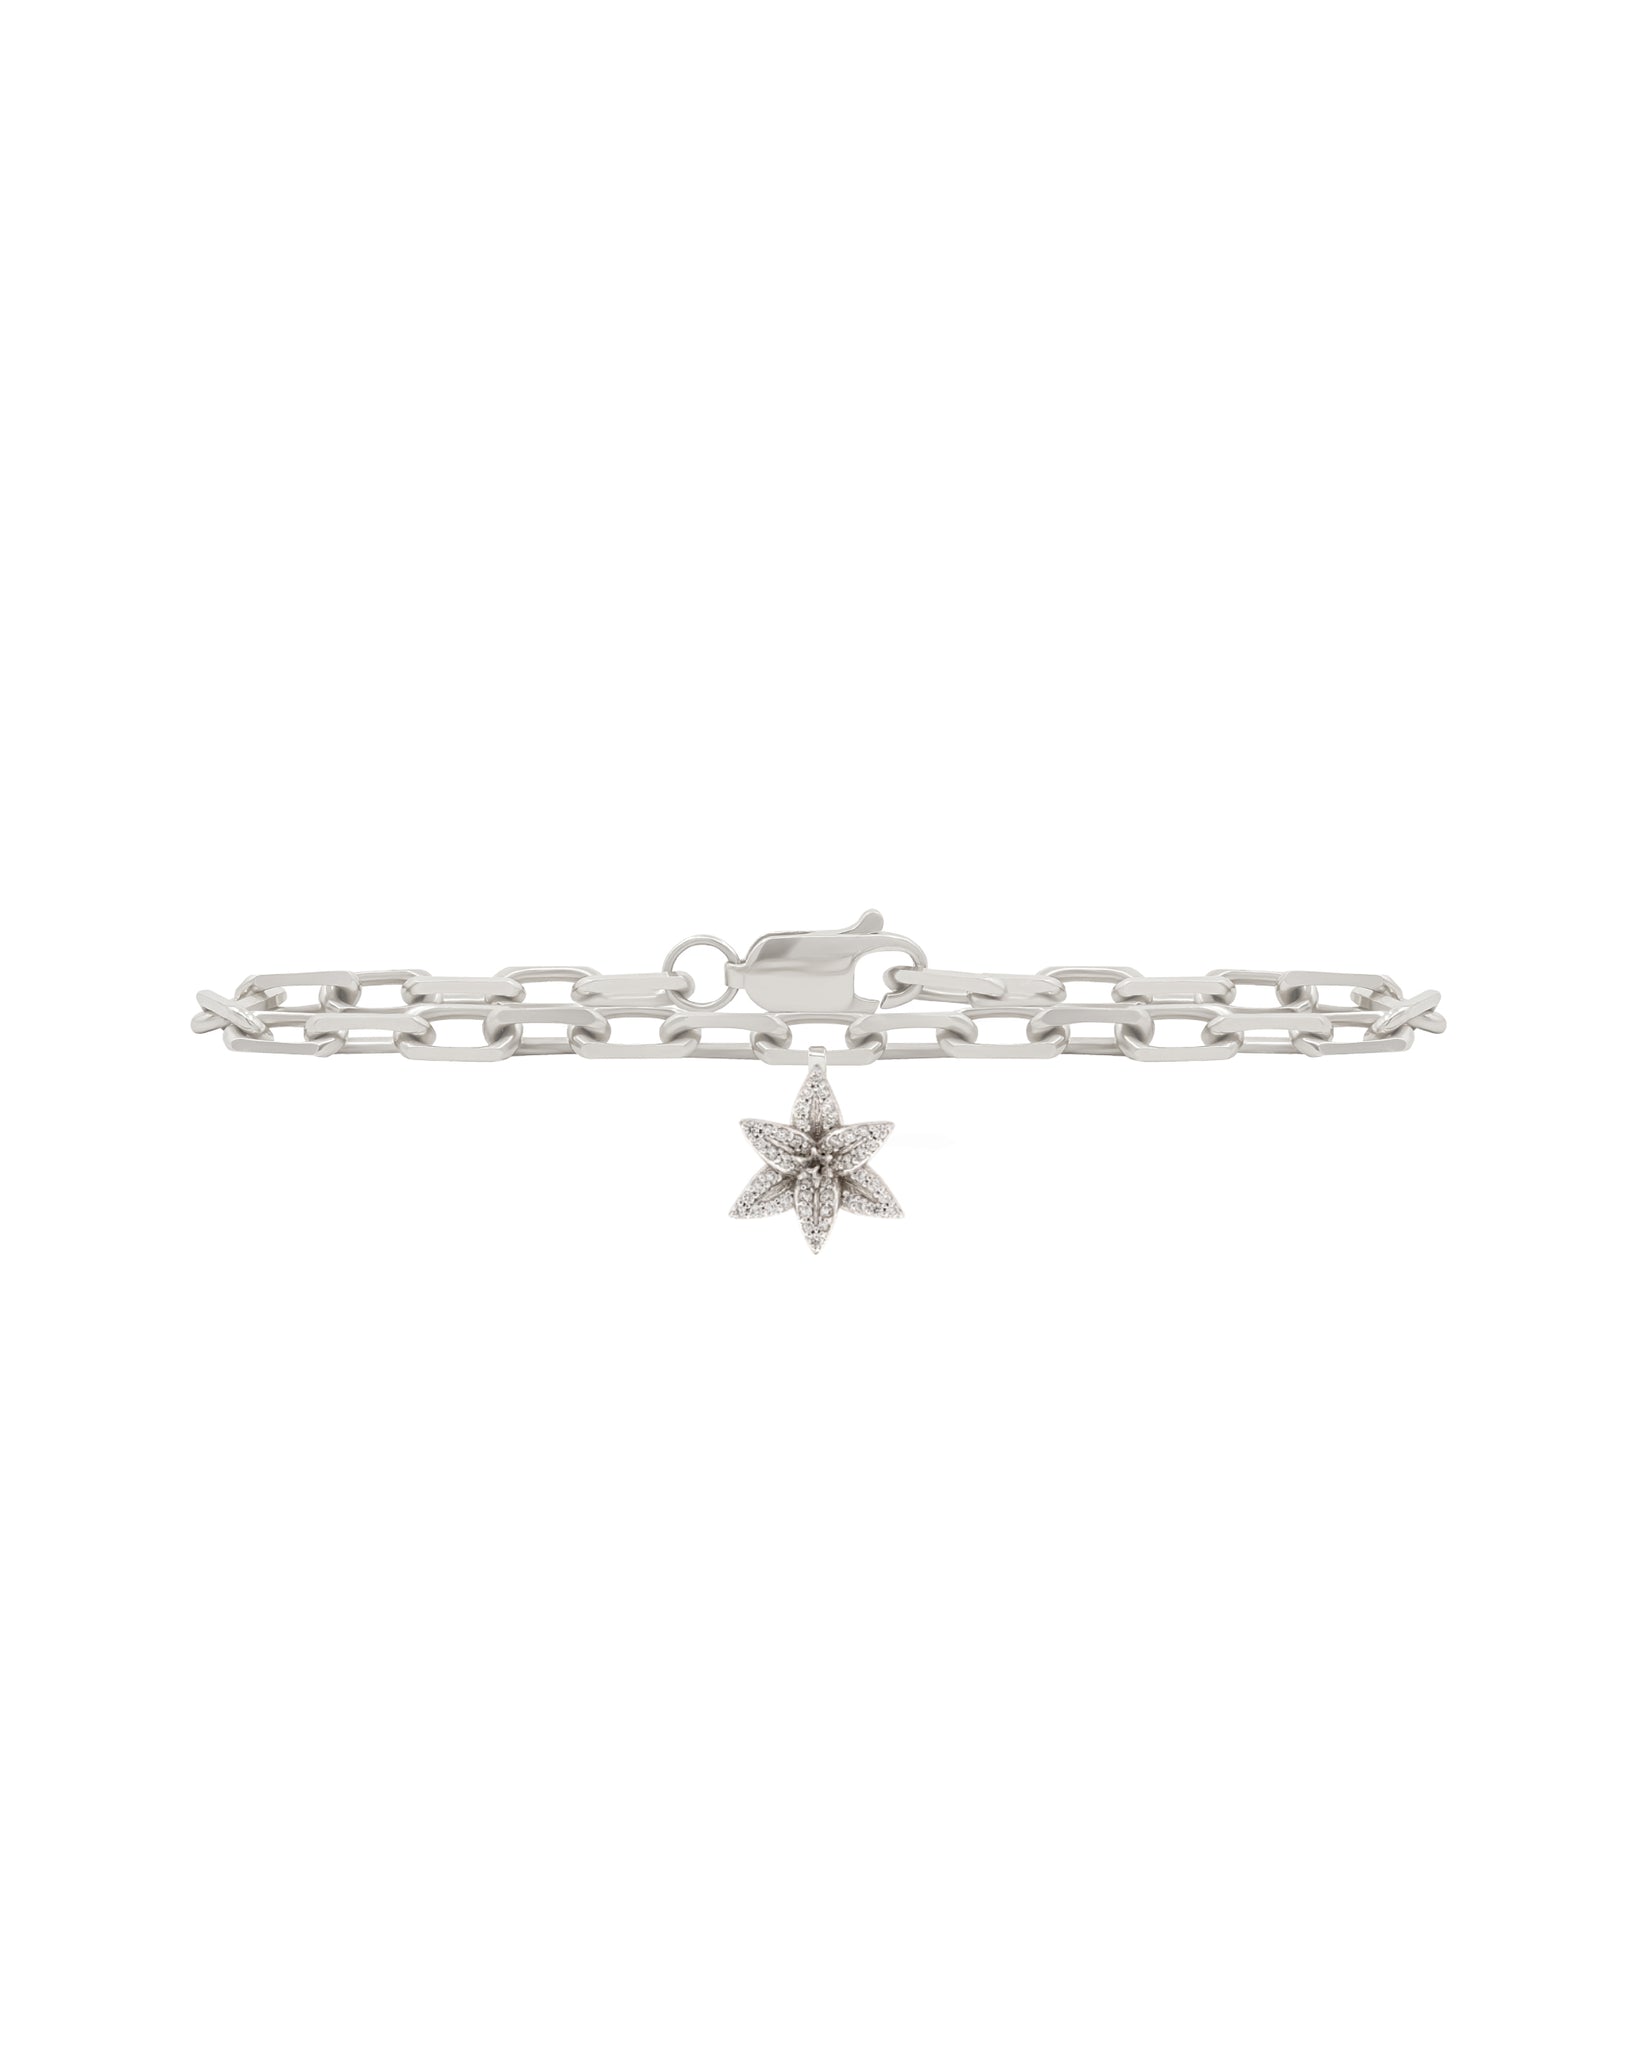 FLORA Pave Diamond Lily Charm Bracelet - 18k